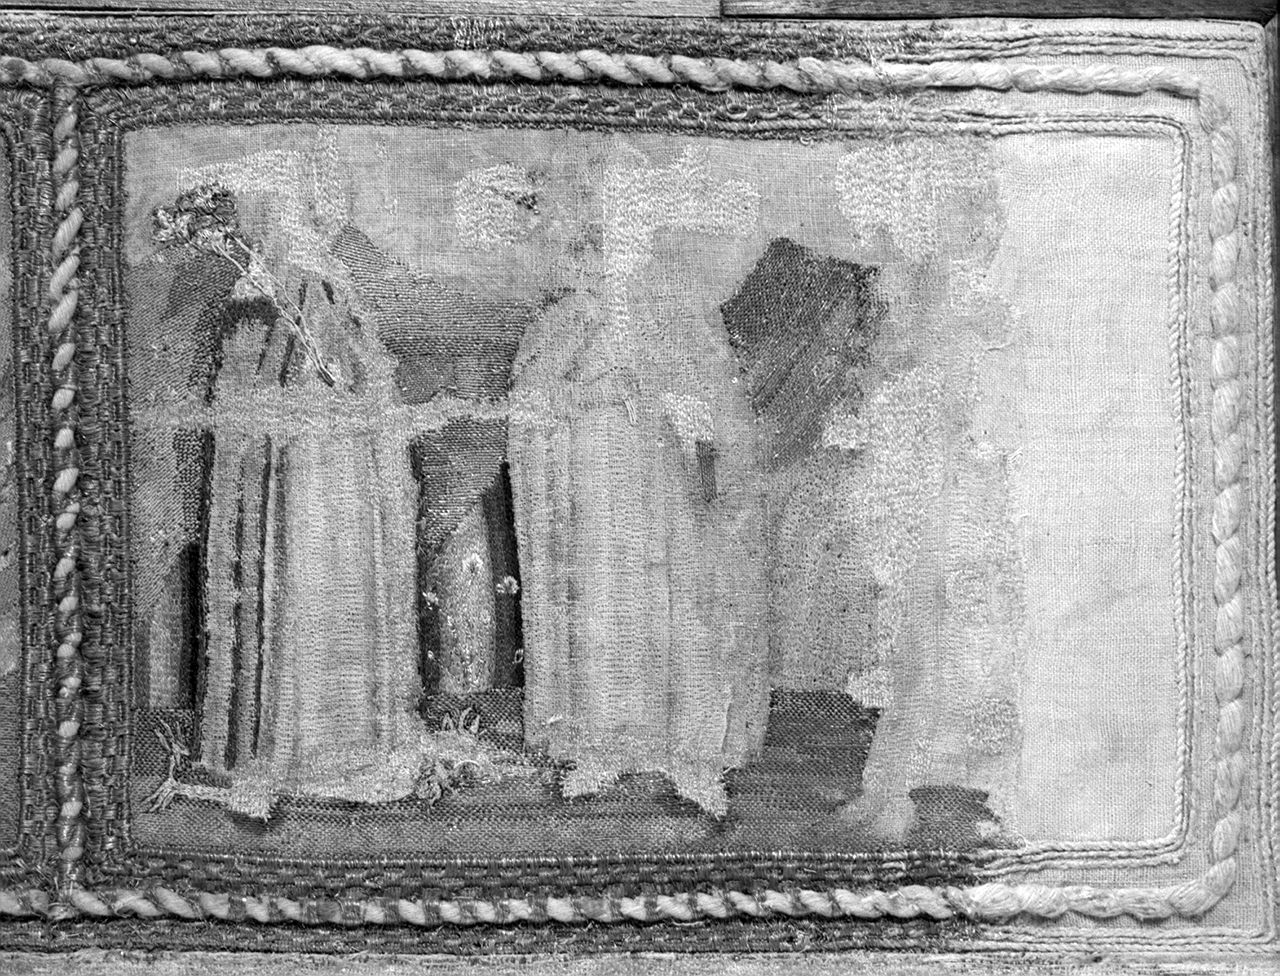 episodi della vita della Madonna e santi (paliotto) - manifattura fiorentina (sec. XV)